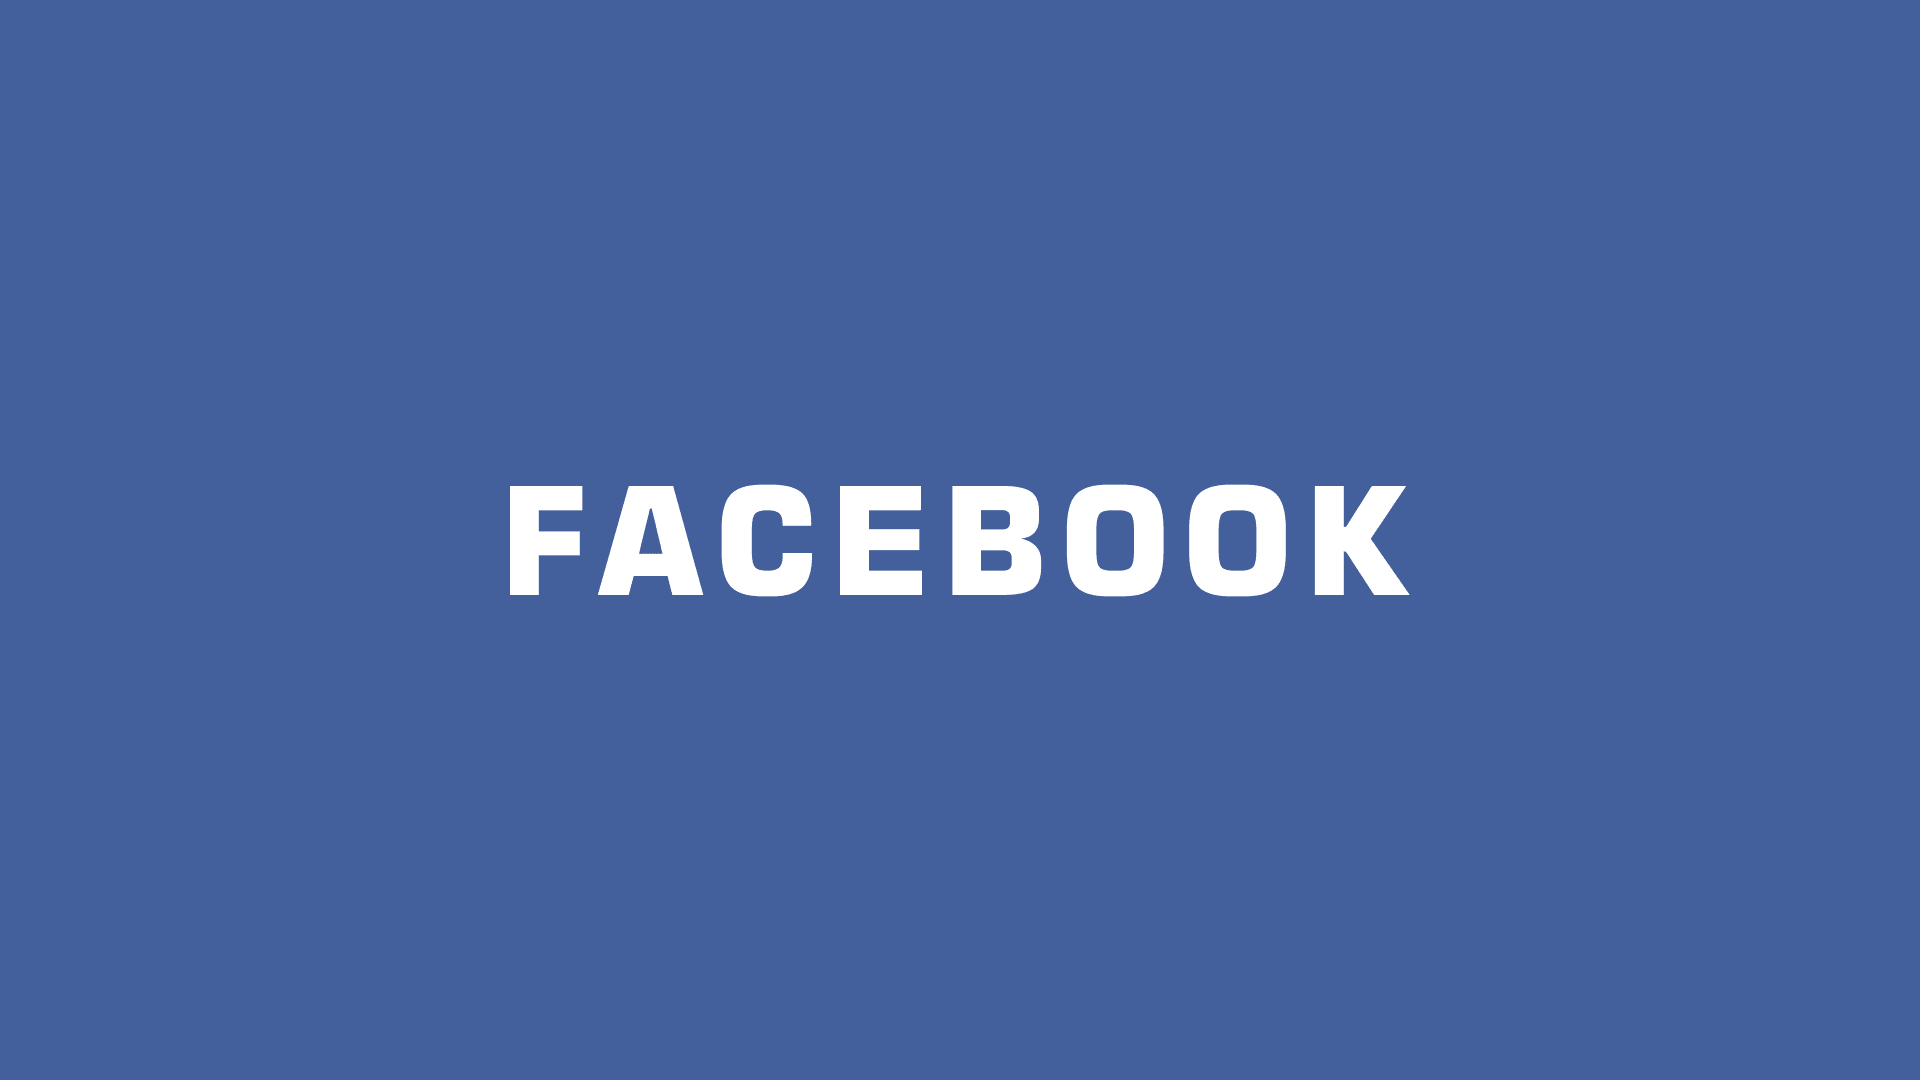 臉書 Facebook 社團「預先批准成員資格」自動審核加入功能教學